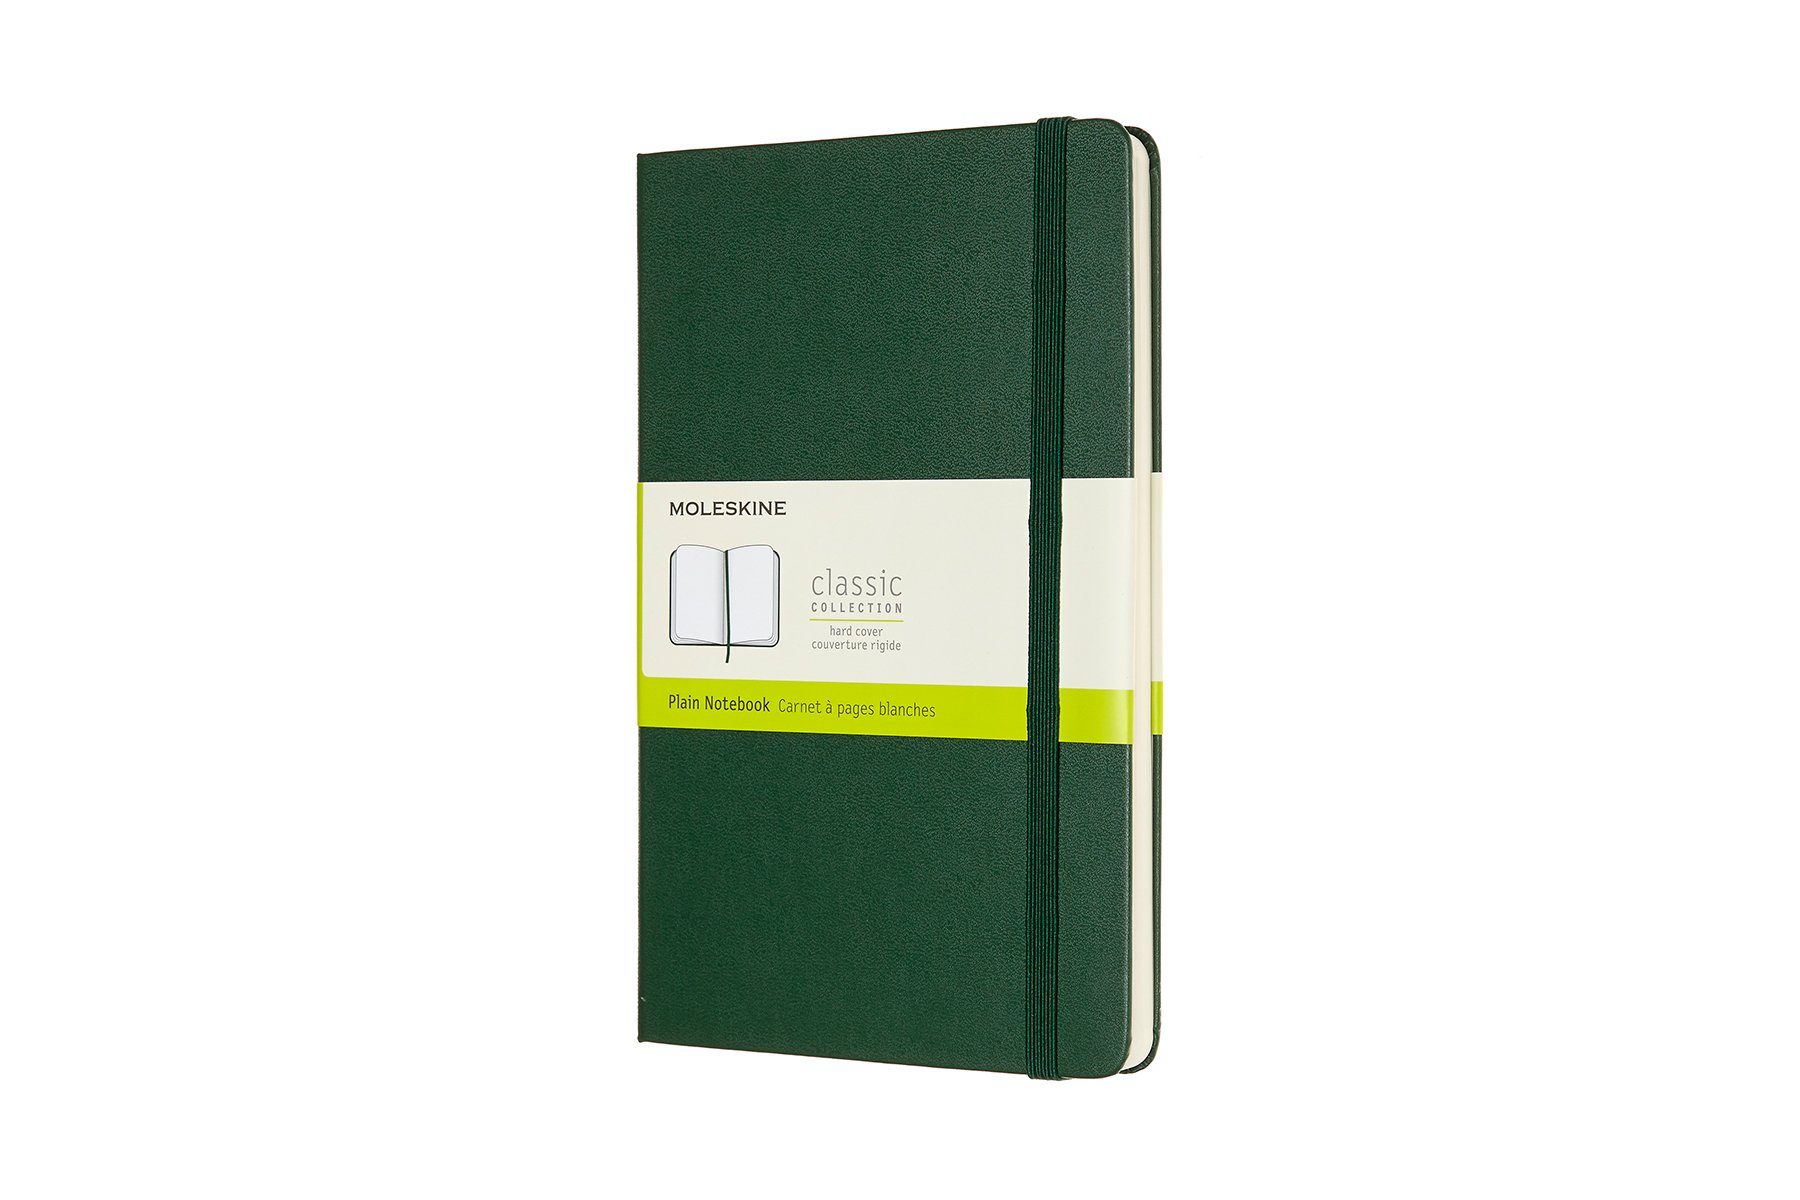 Notizbuch, L/A5 - mit Groß (13x21) Classic MOLESKINE Collection 70g-Papier - festem Einband Myrtengrün